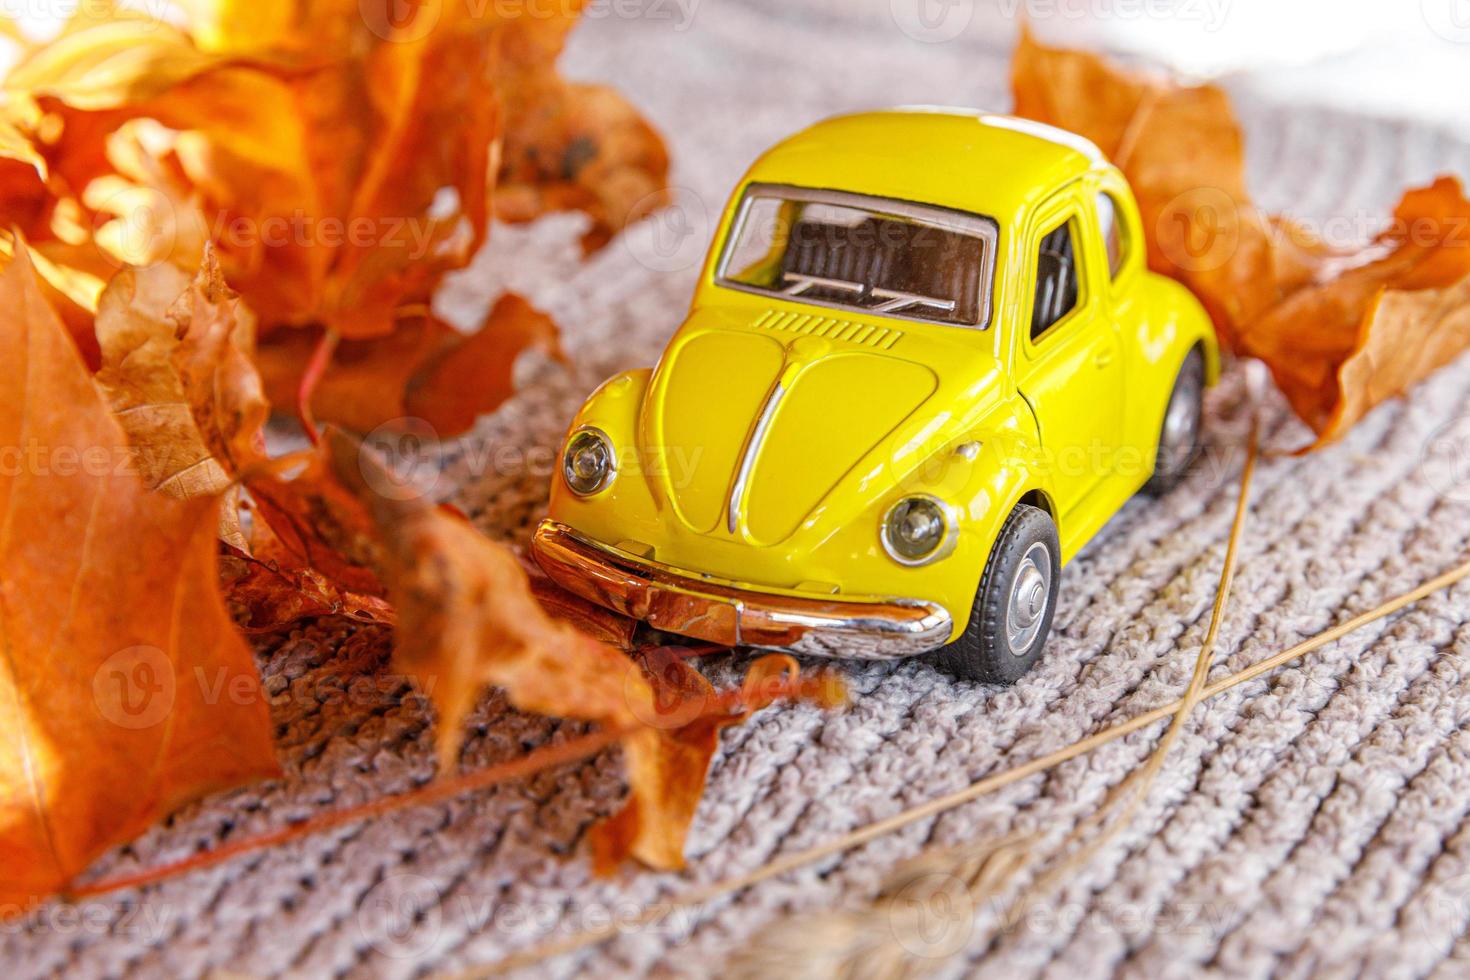 herfst achtergrond. gele speelgoedauto en gedroogde oranje herfst esdoorn bladeren op grijze gebreide trui. Thanksgiving banner kopie ruimte. hygge mood koud weer leveringsconcept. hallo herfstreizen. foto